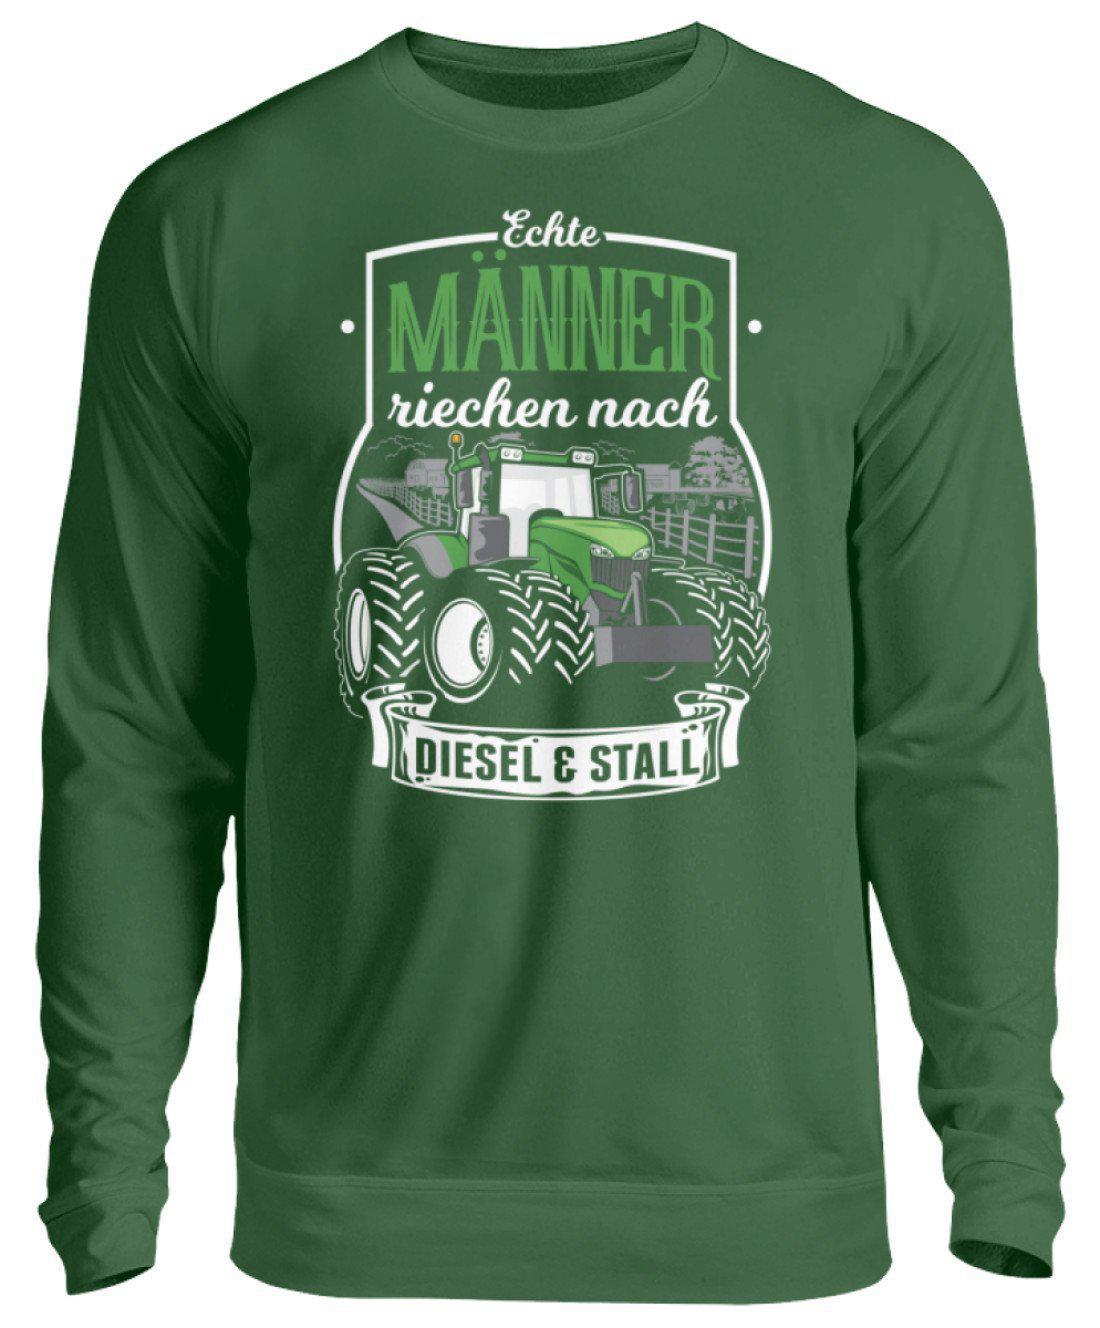 Männer Diesel und Stall · Unisex Sweatshirt Pullover-Unisex Sweatshirt-Bottle Green-S-Agrarstarz